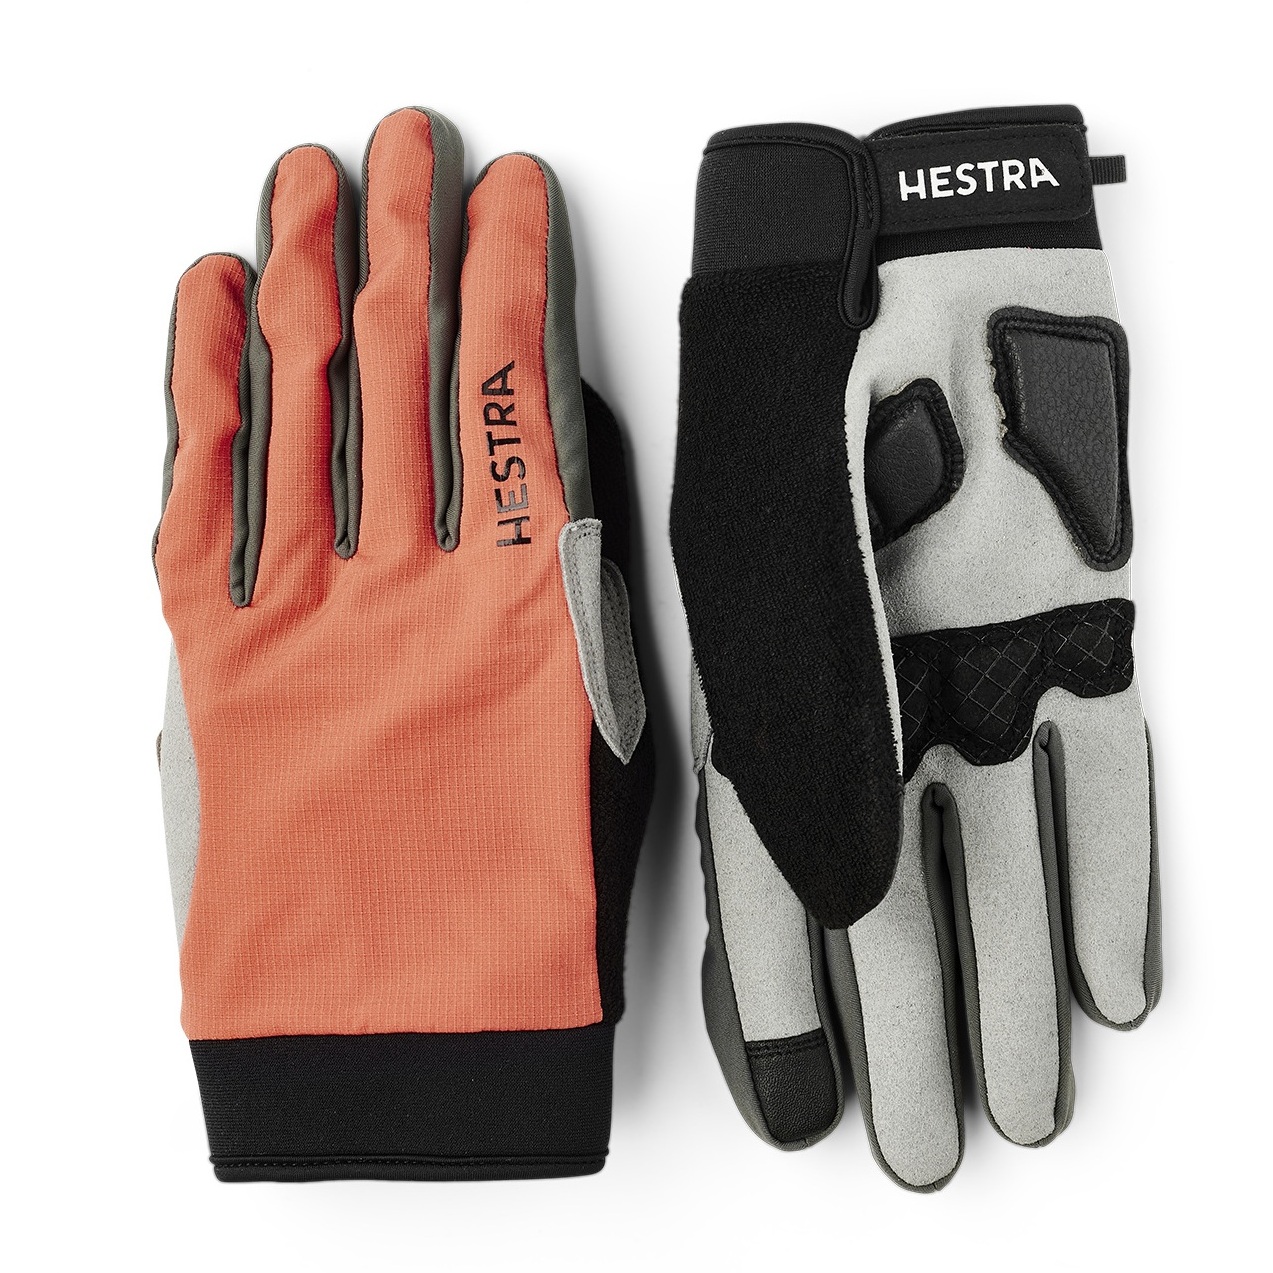 Productfoto van Hestra Bike Guard Long - 5 Finger Fietshandschoenen - orange